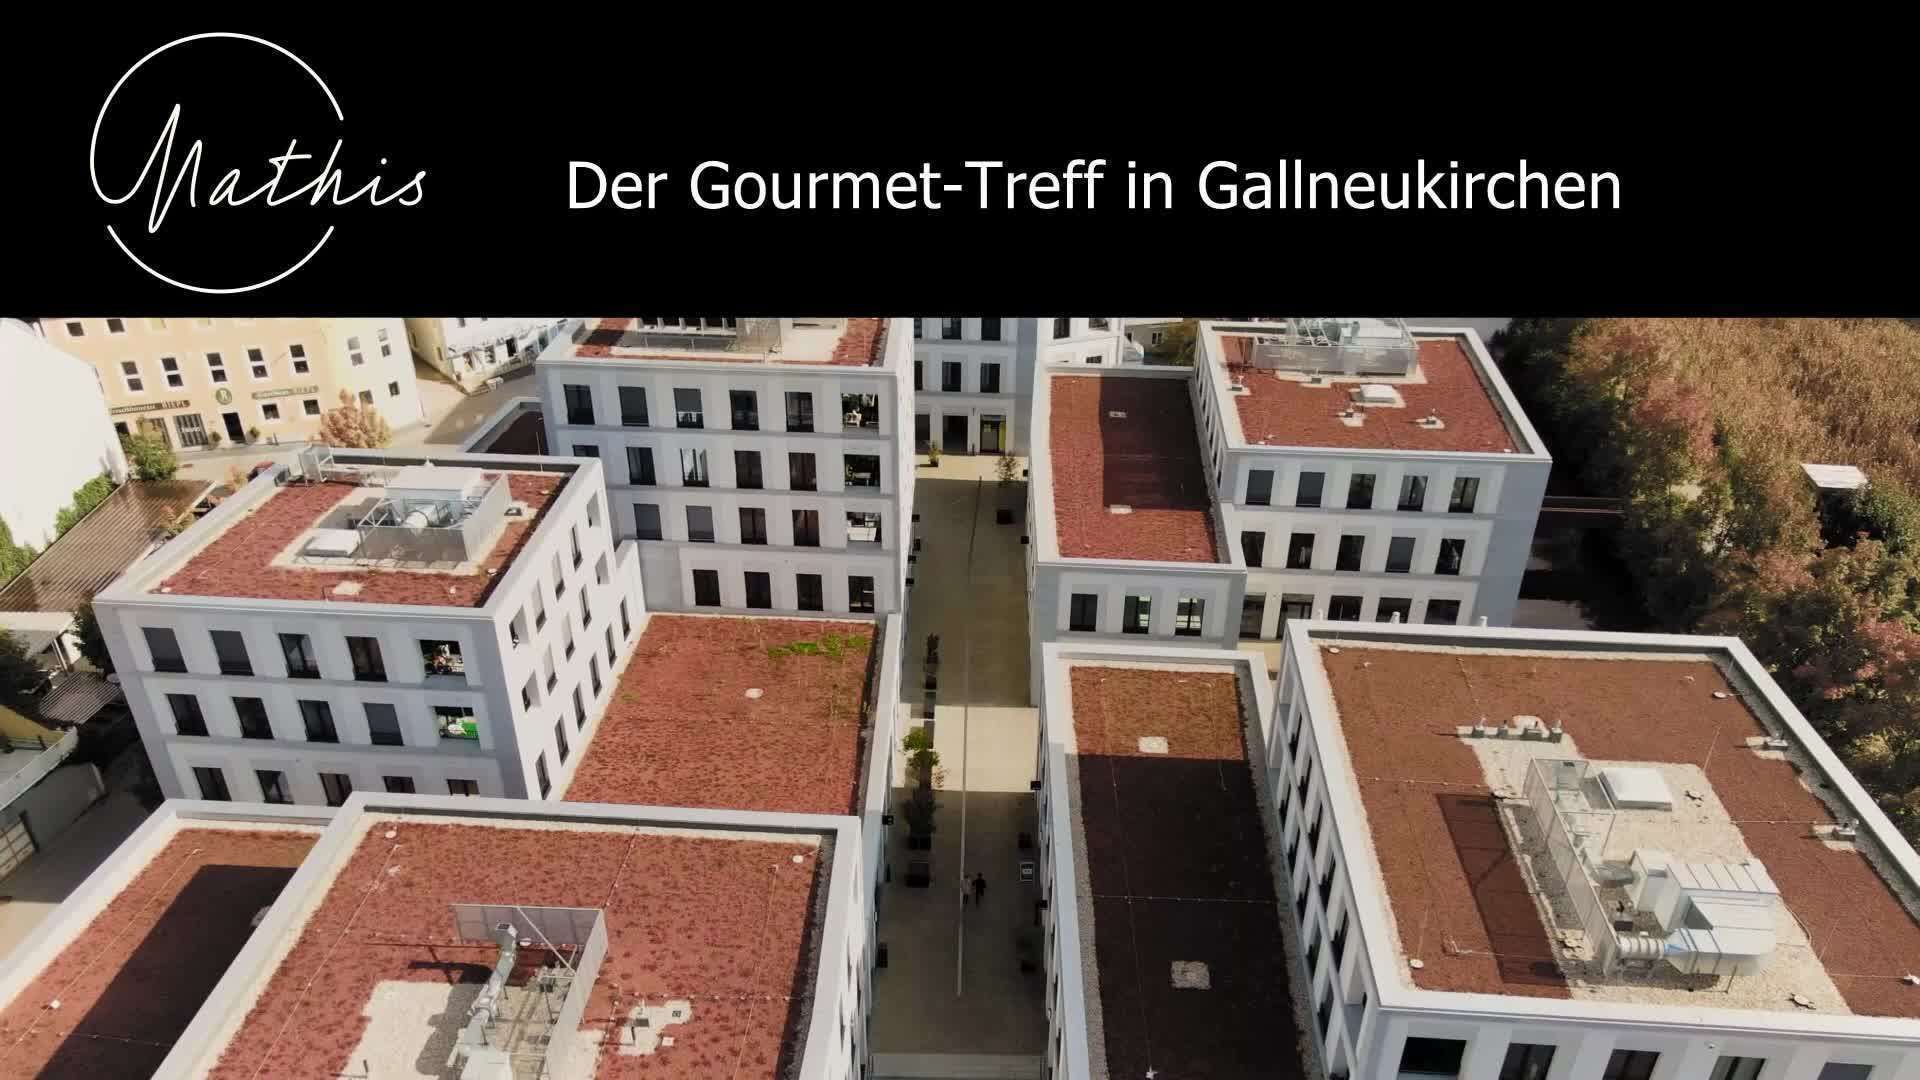 Mathis - Der Gourmet-Treff in Gallneukirchen